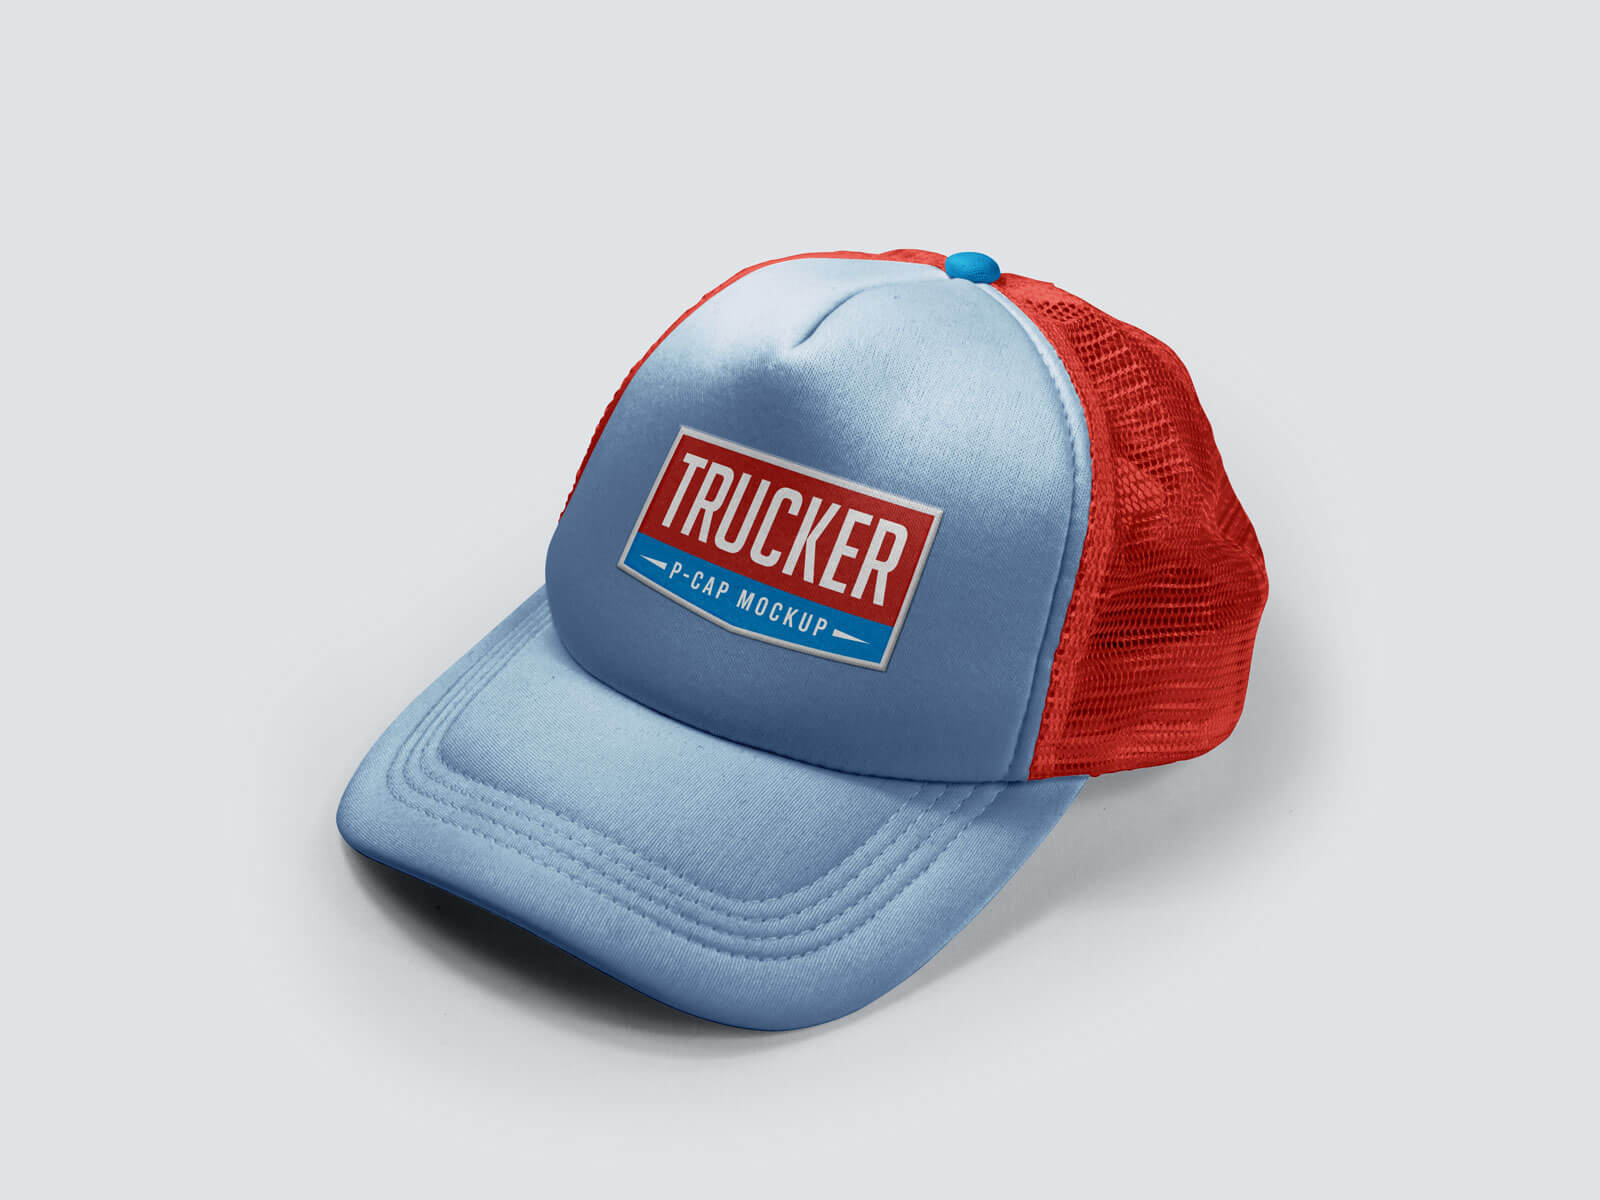 Männer / Frauen Sommer-Trucker P-Cap Modup